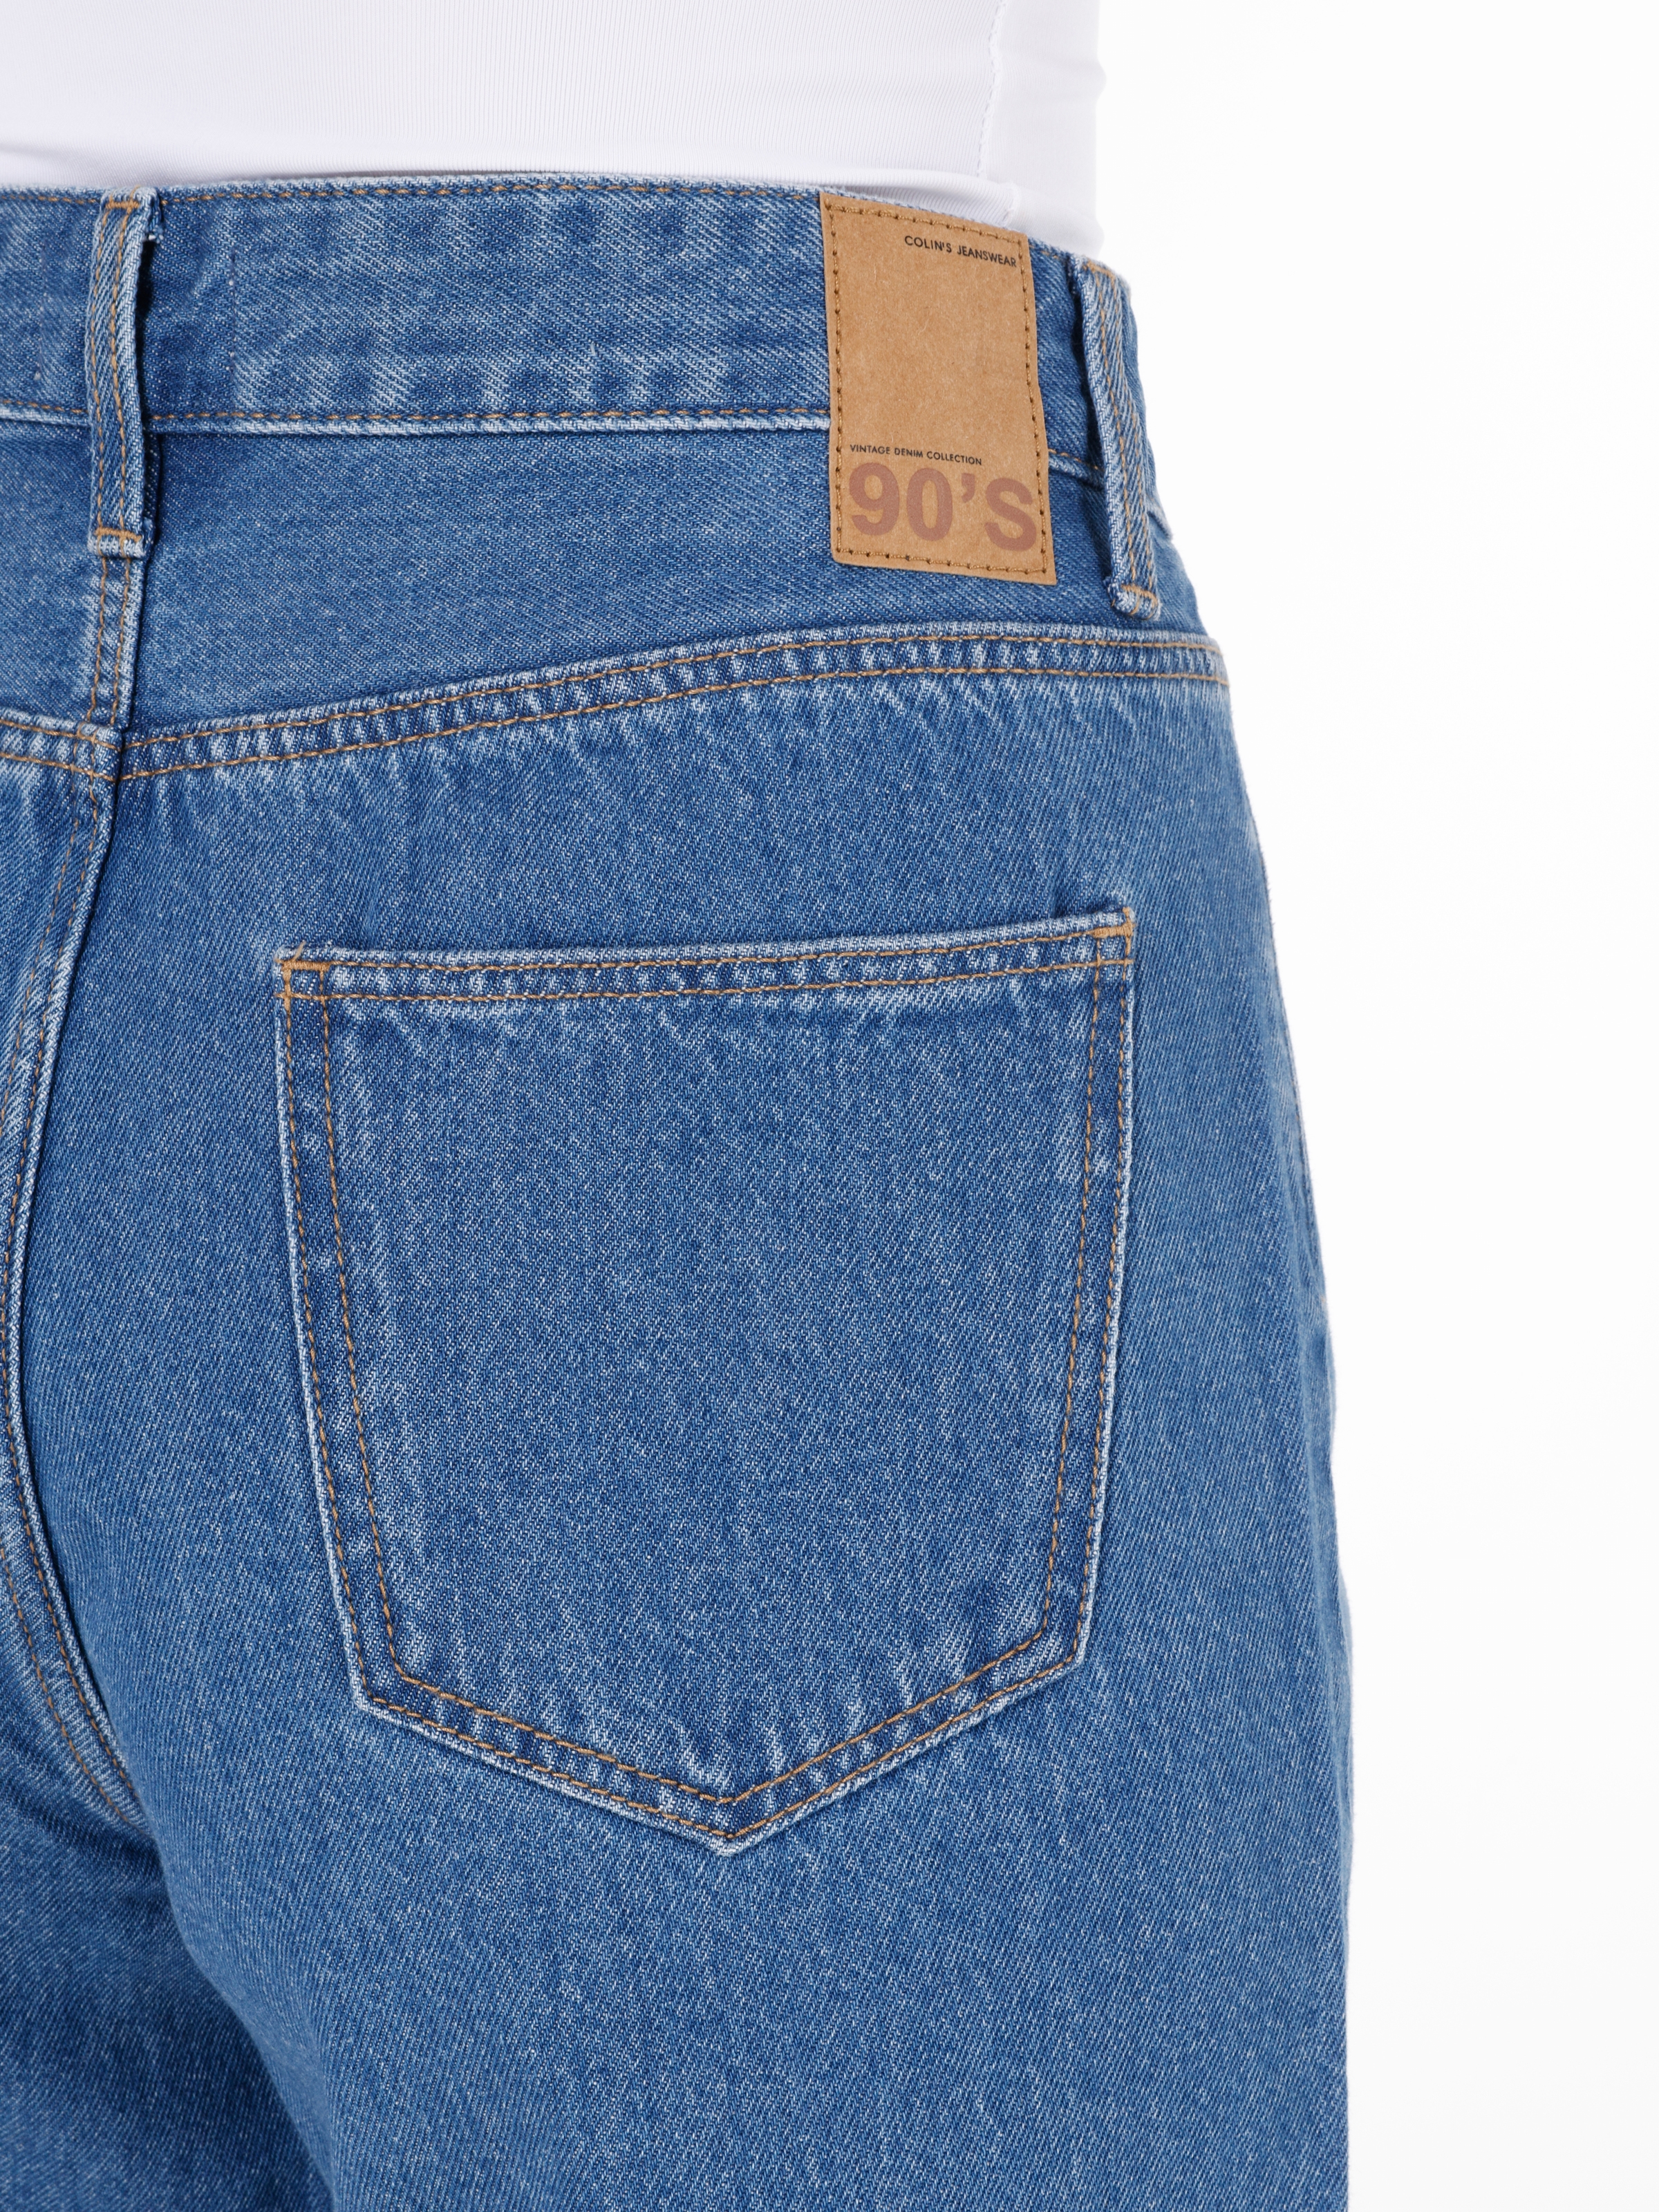 Afișați detalii pentru Short / Pantaloni Scurti De Dama Albastru   